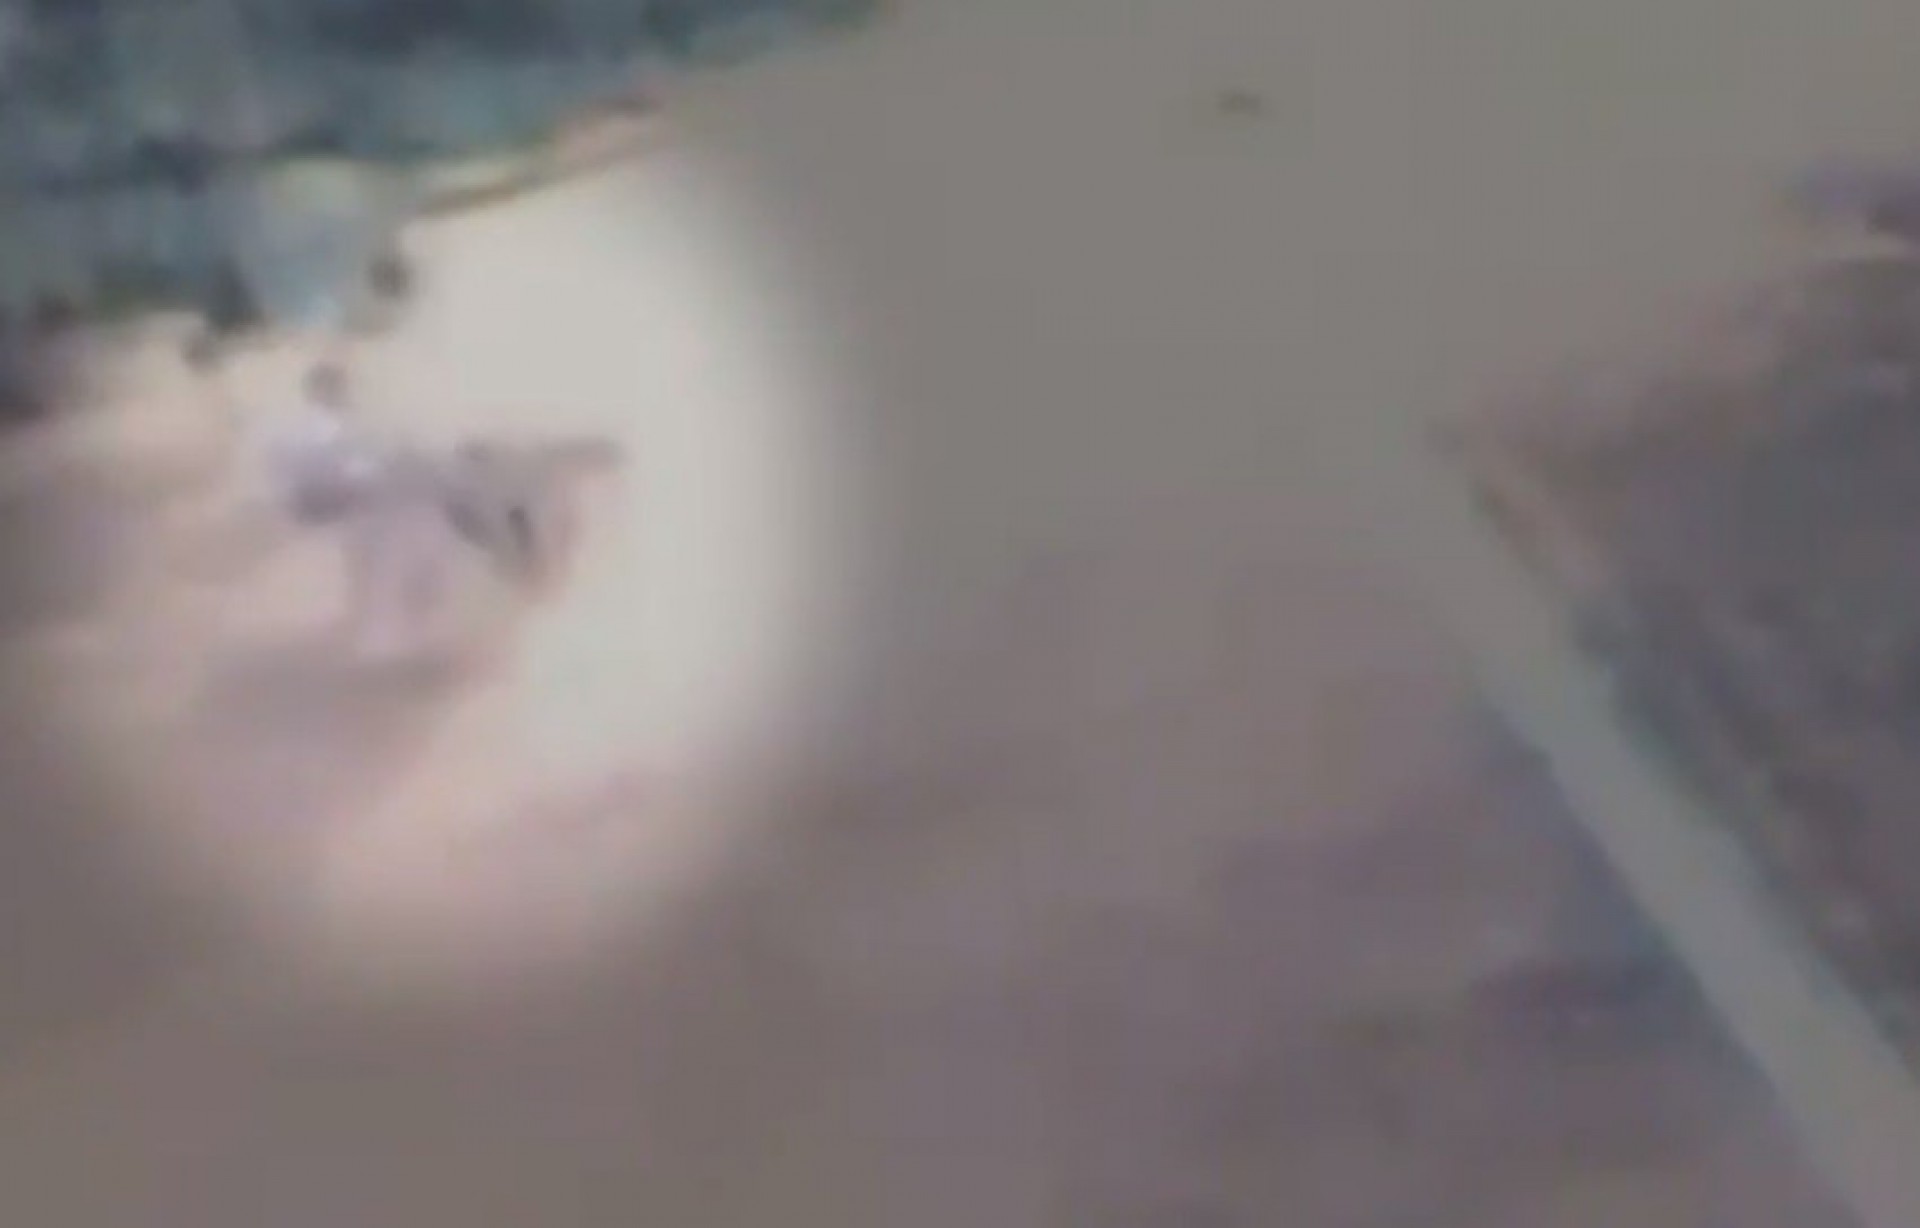 Vídeo obtido pela polícia mostra últimos momentos de grávida morta na linha do trem